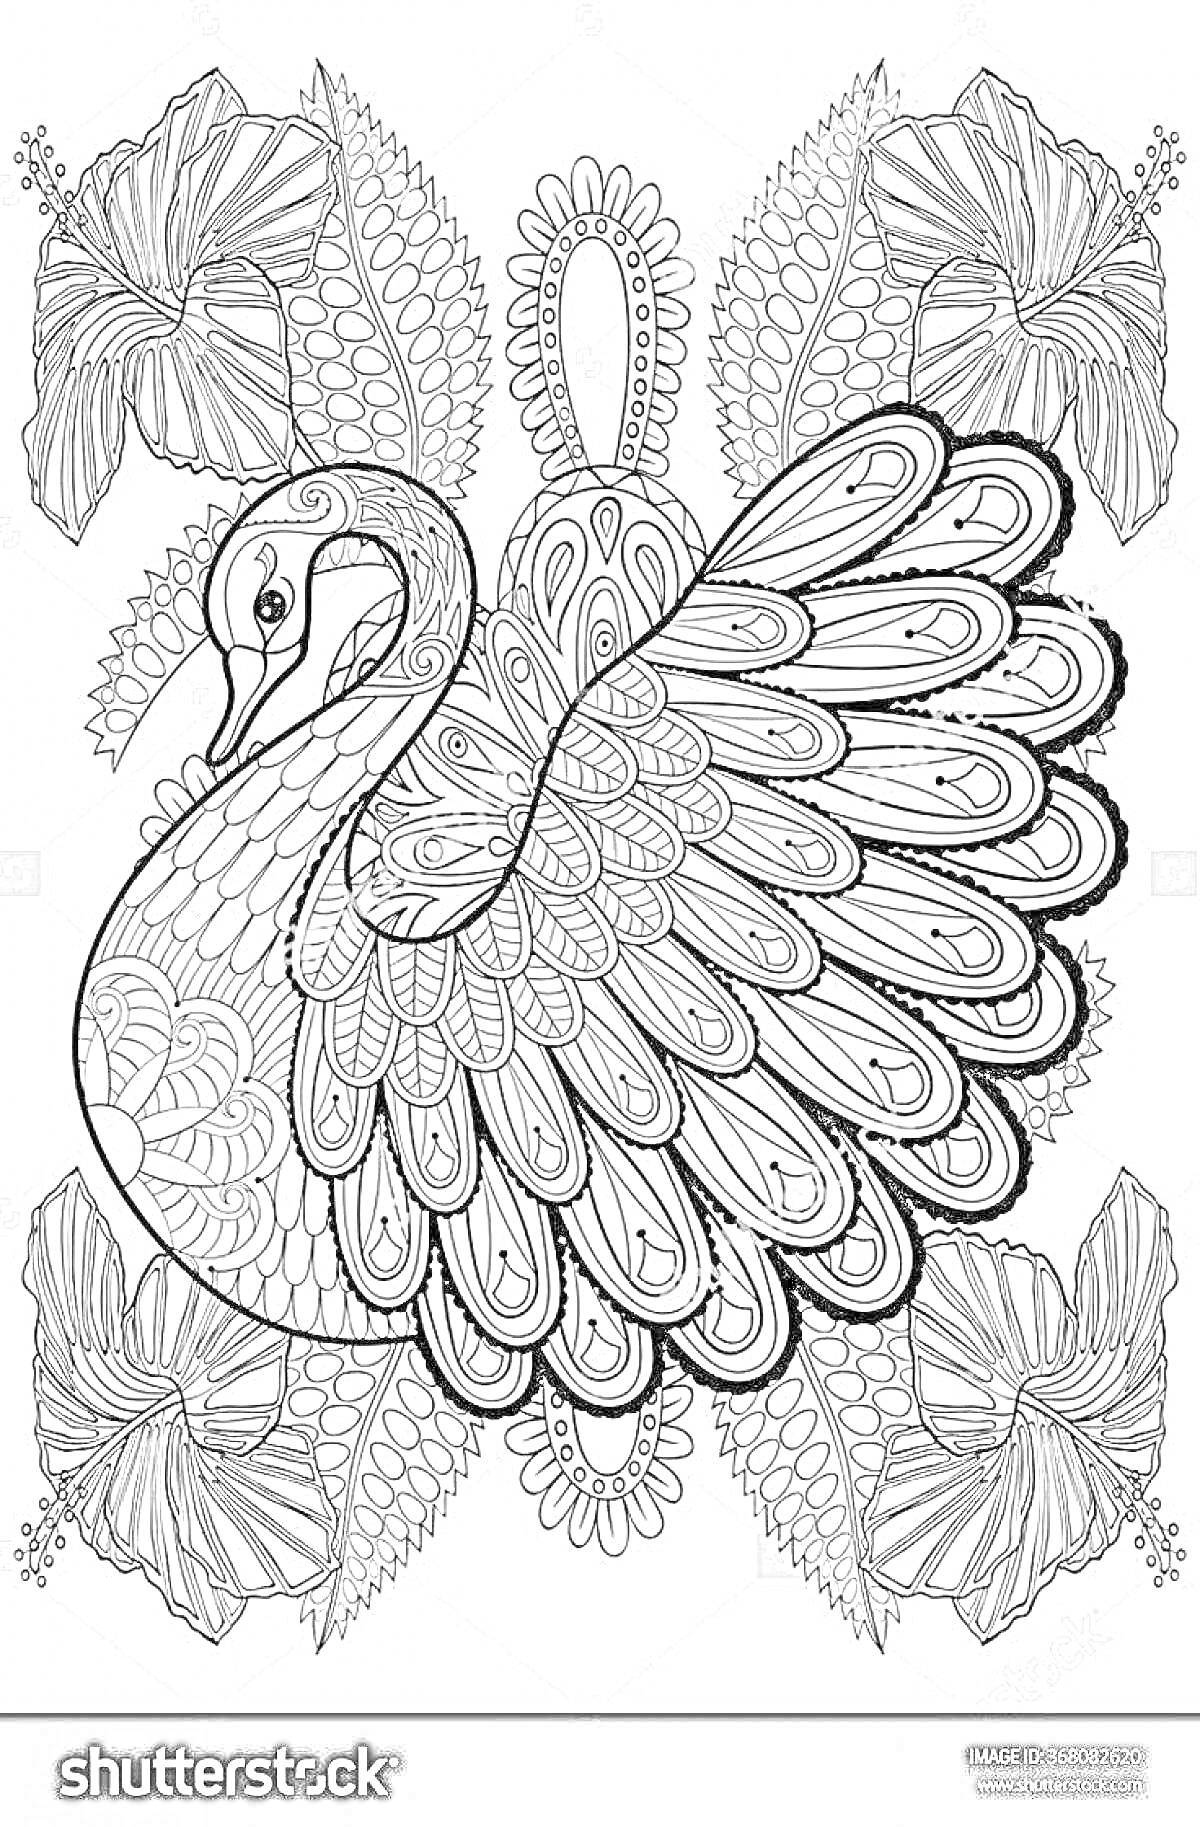 Раскраска Лебедь с декоративными элементами и цветами антистресс